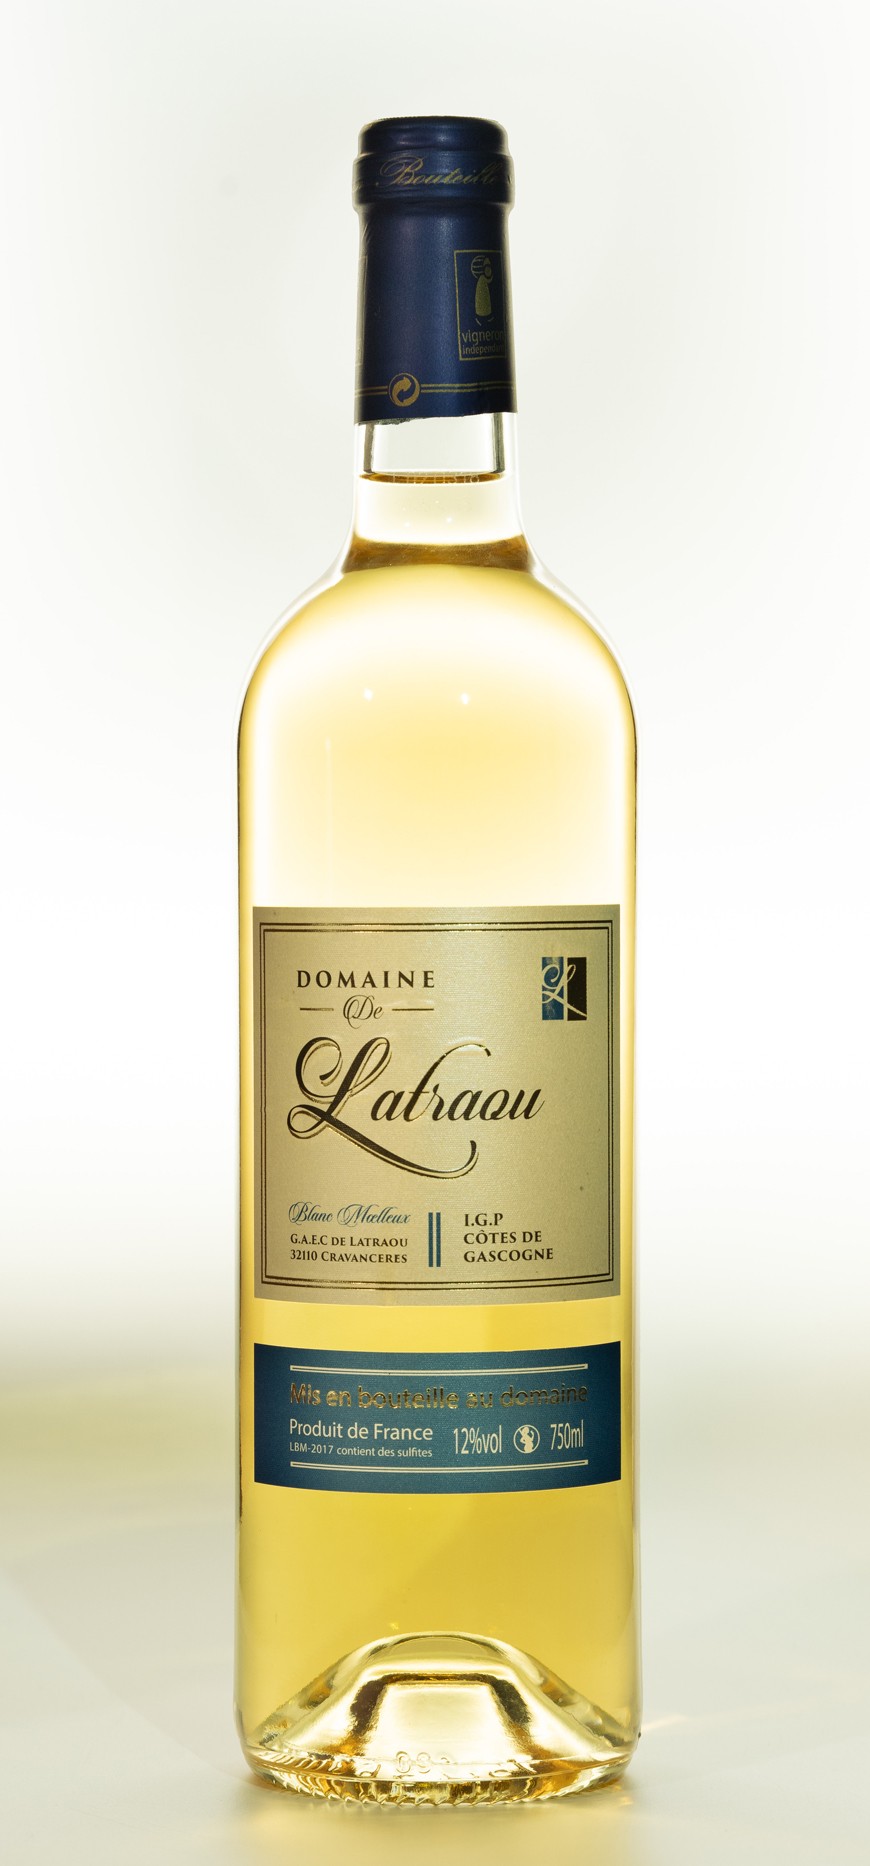 Côtes de Gascogne: vin blanc moelleux 75cl